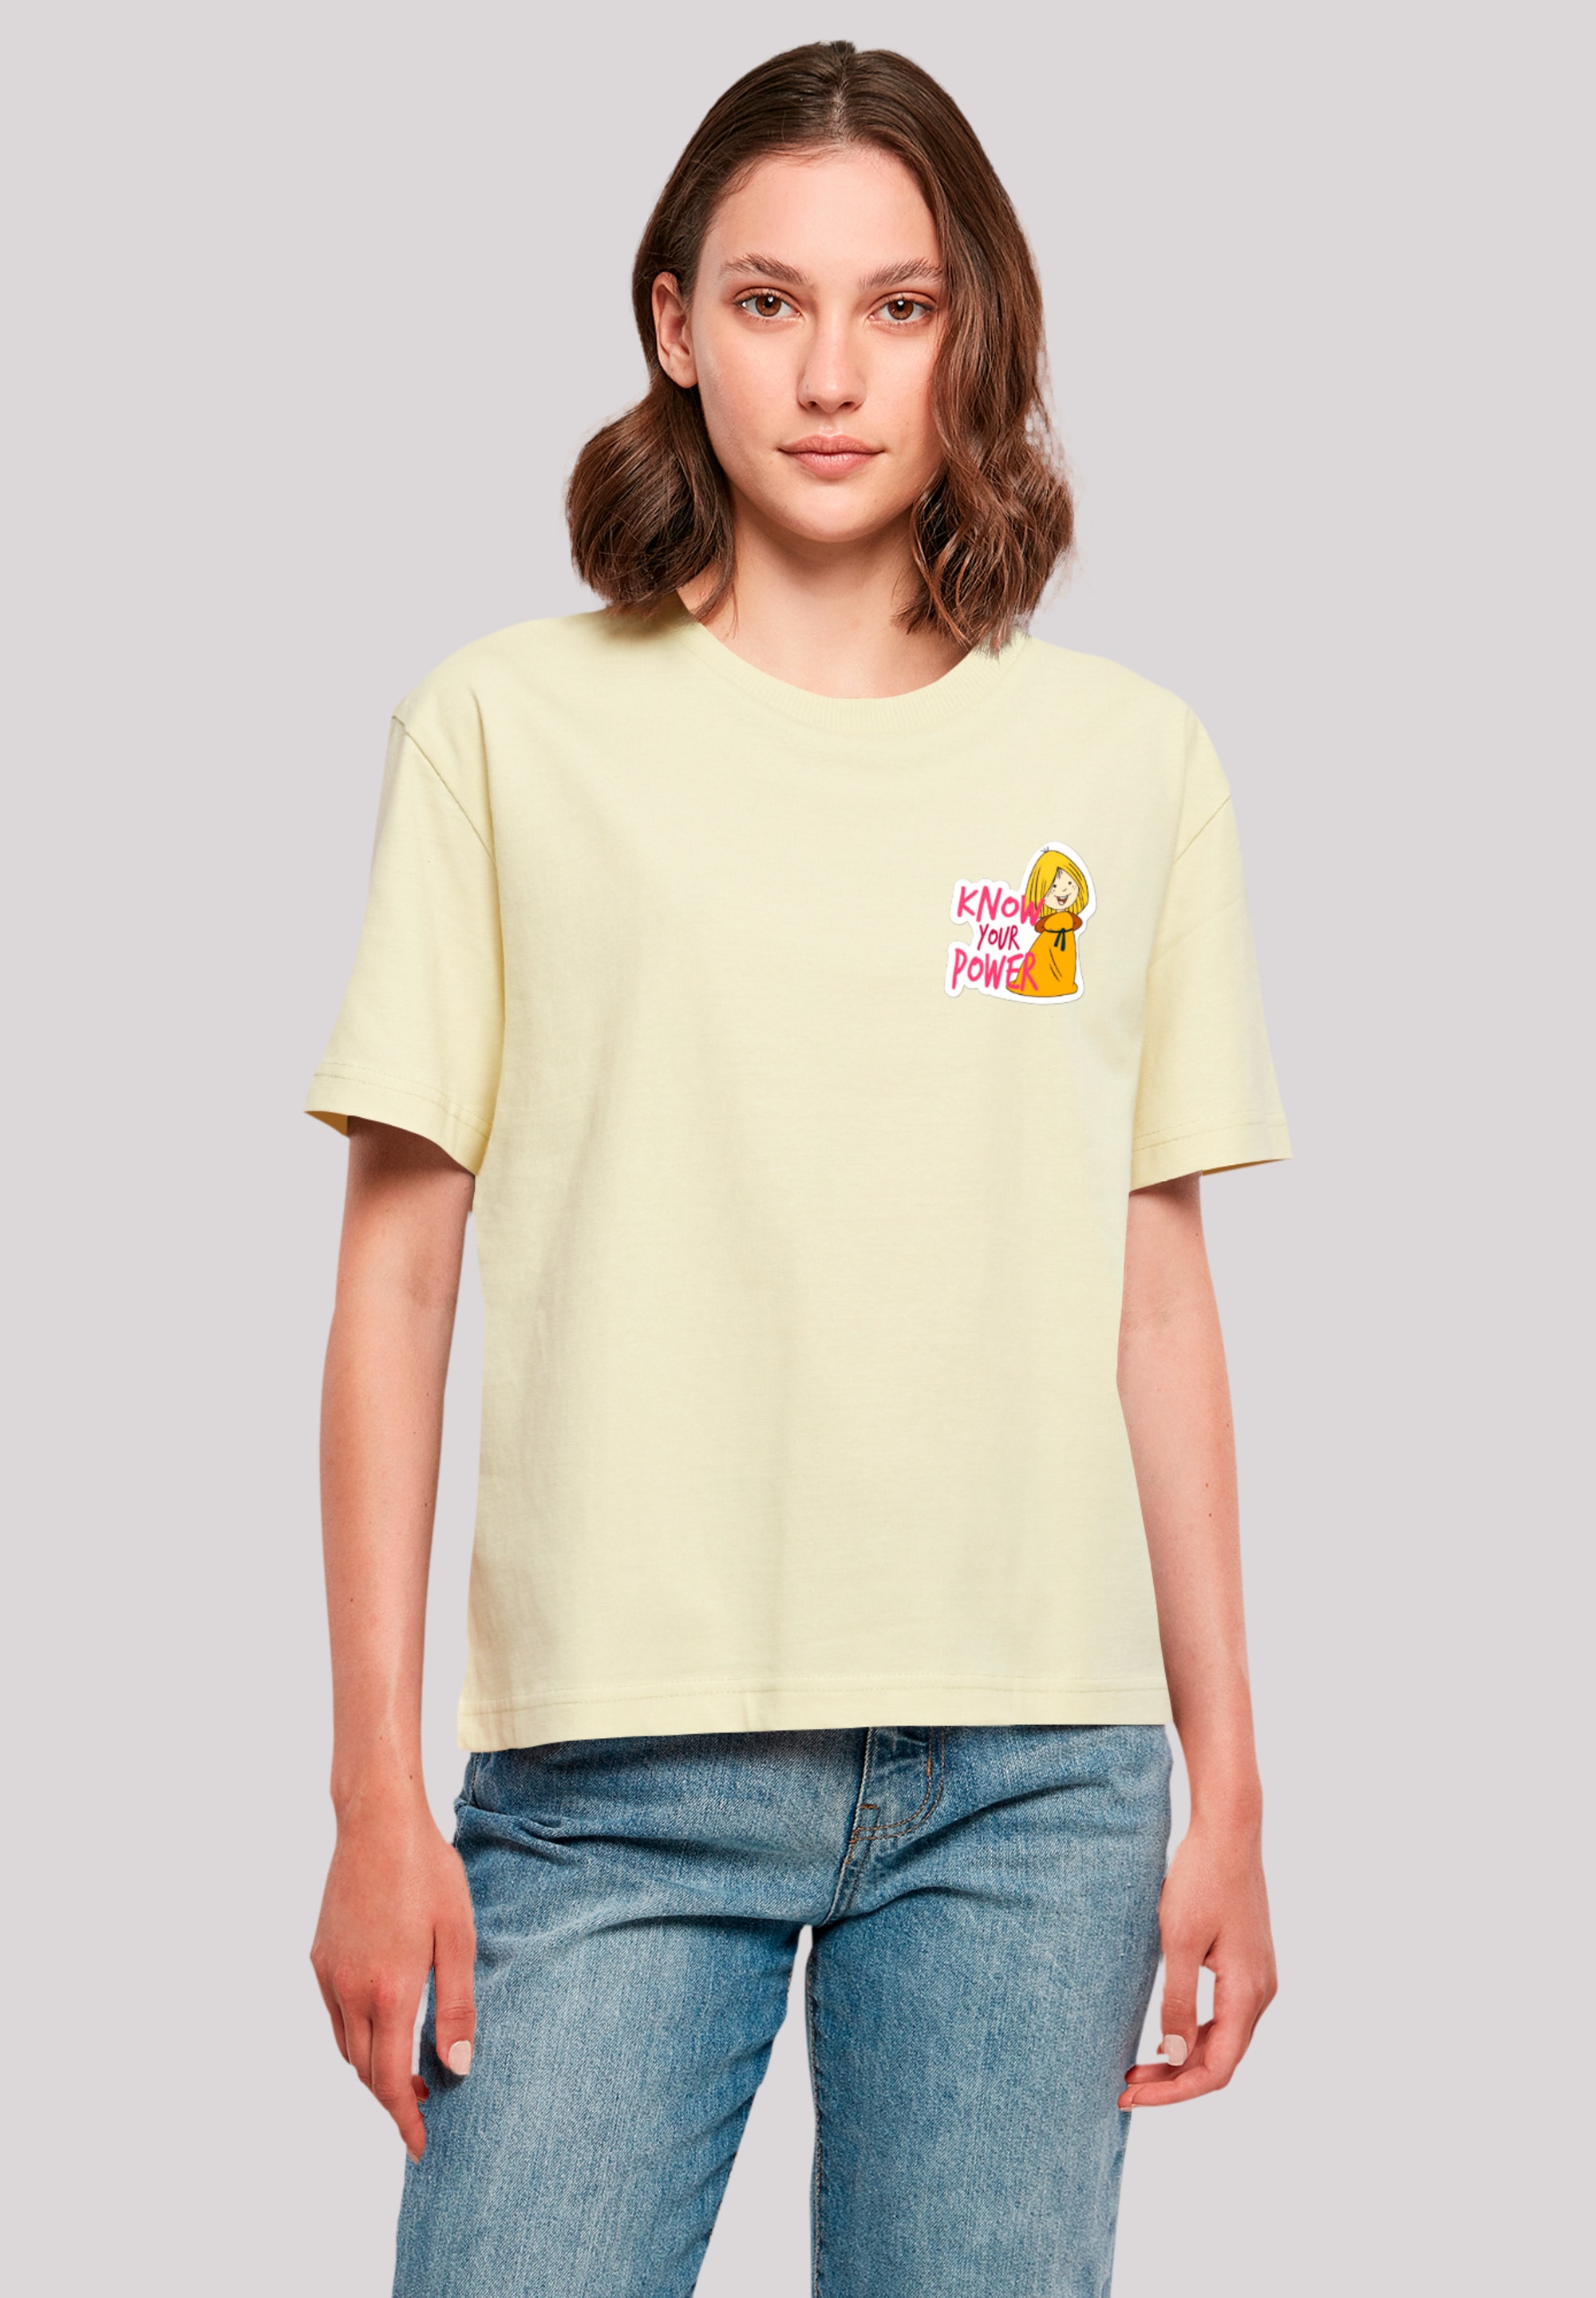 T-Shirt »Wickie Know Your Power«, Nostalgie, Retro Print, Kinderserie